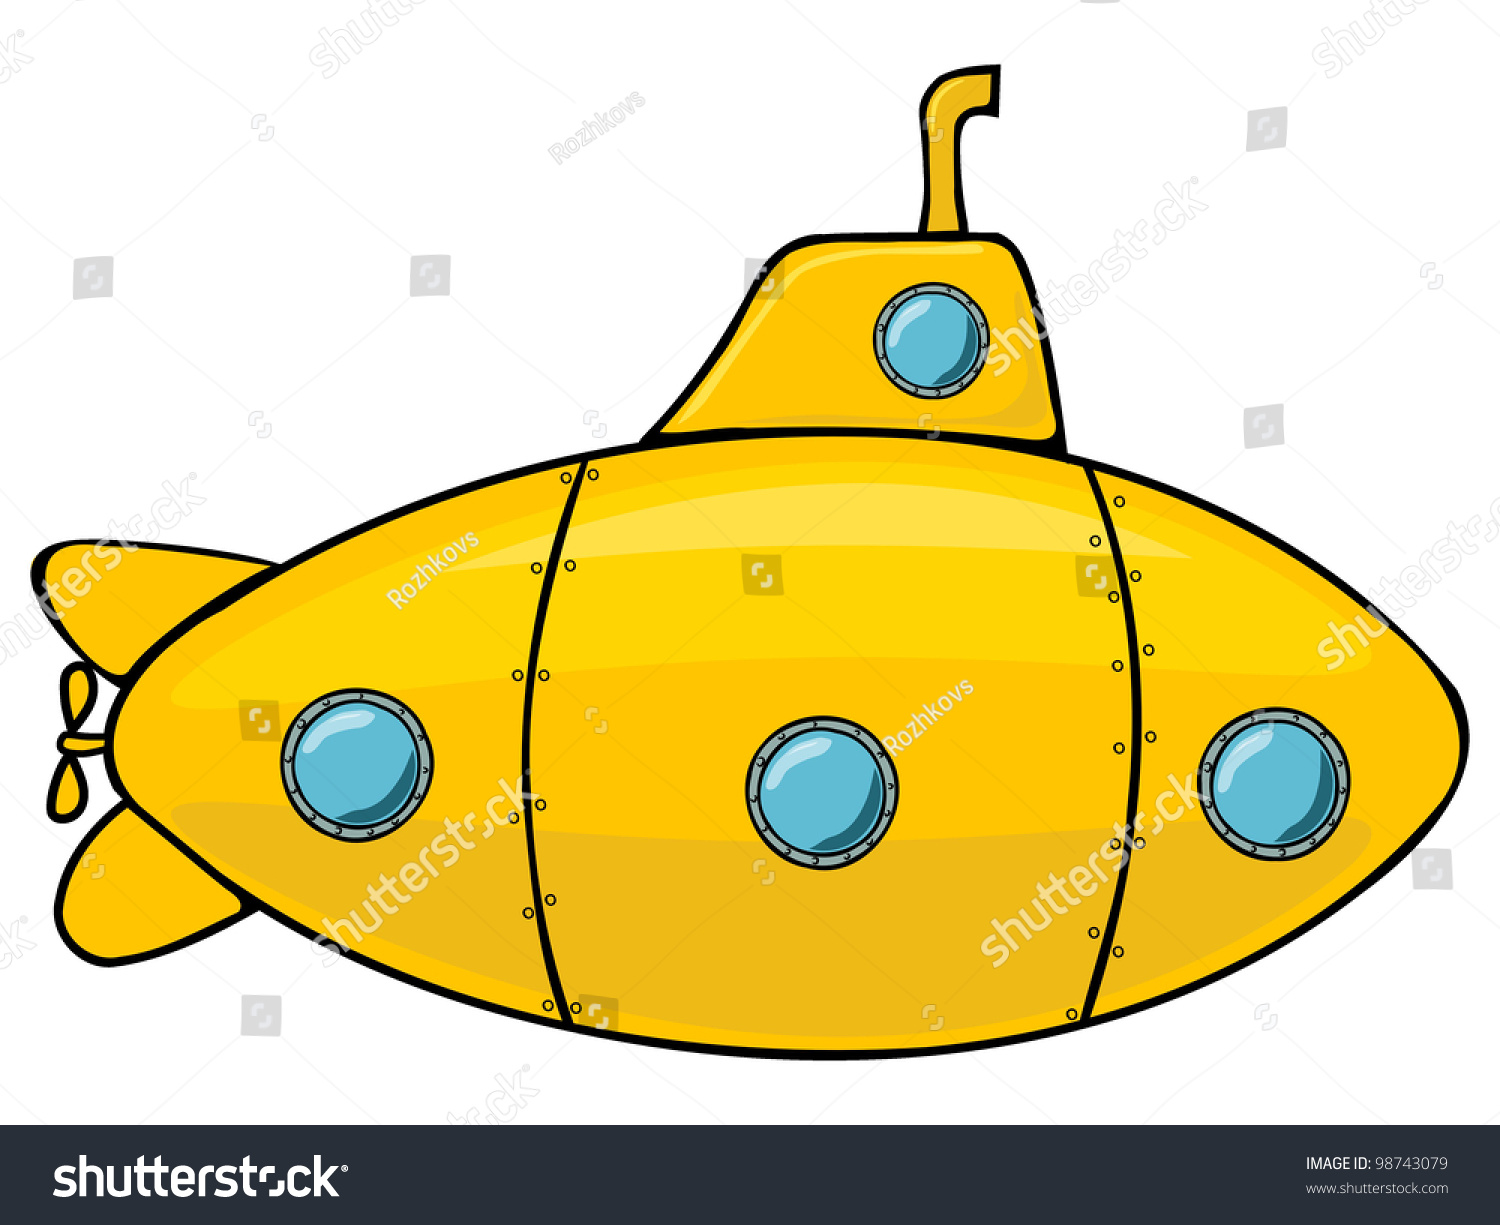 stock-vector-yellow-submarine-98743079.jpg